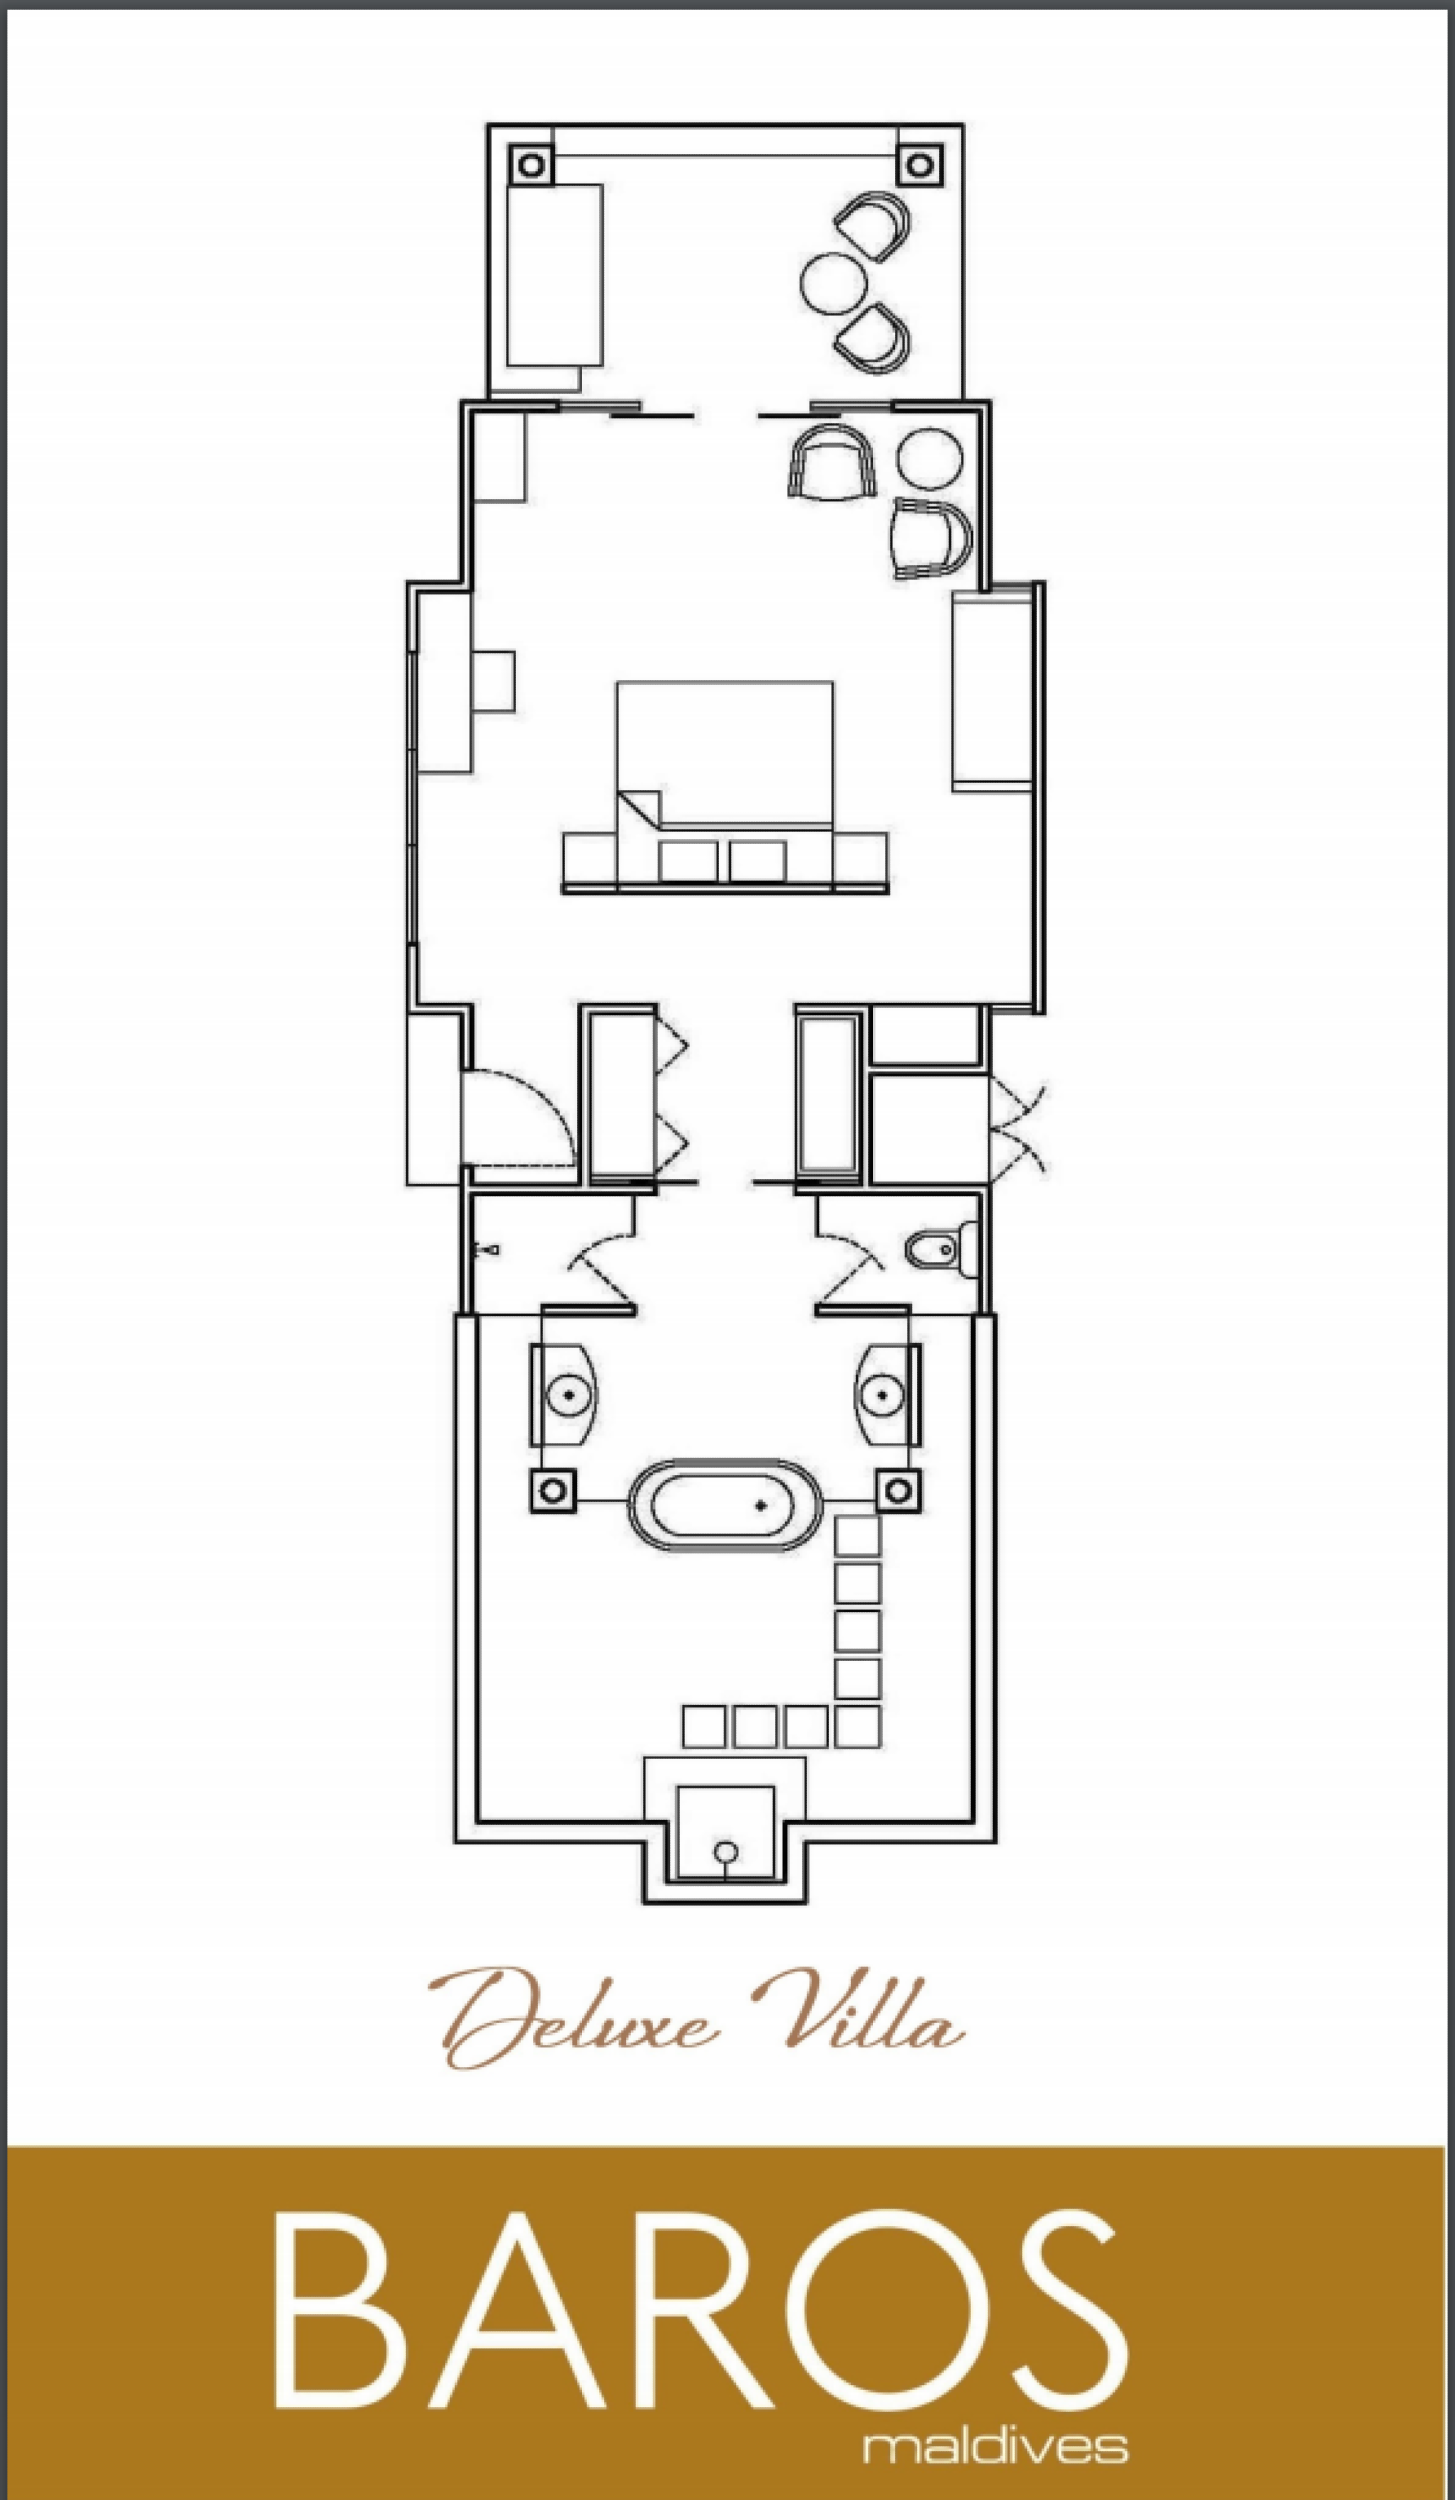 Deluxe Villa - Floor Plan - Baros Maldives